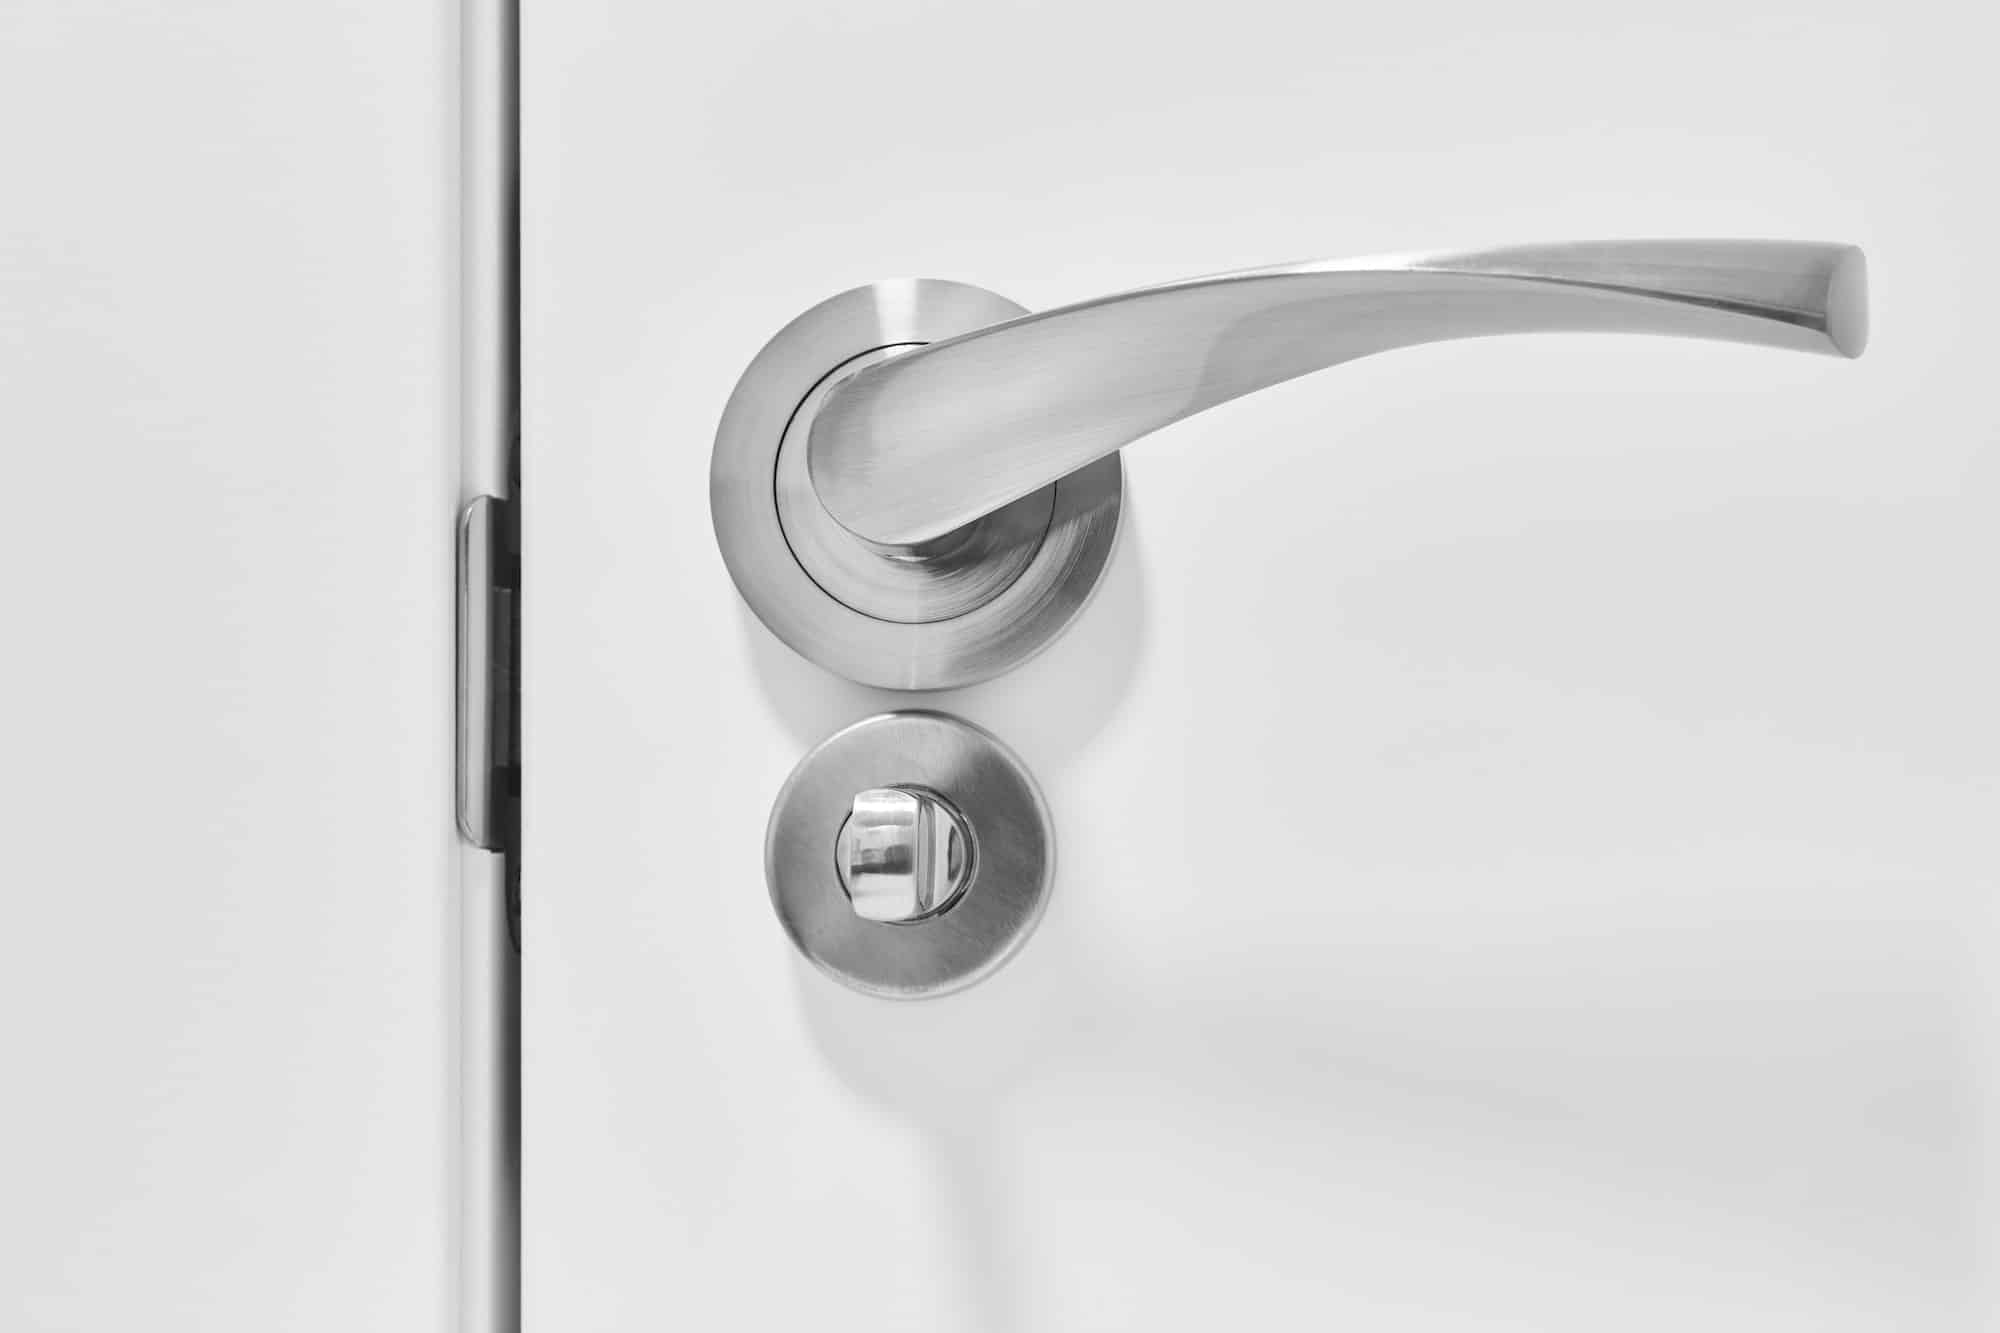 Metallic doorknob and bolt on a white wooden door. Detail